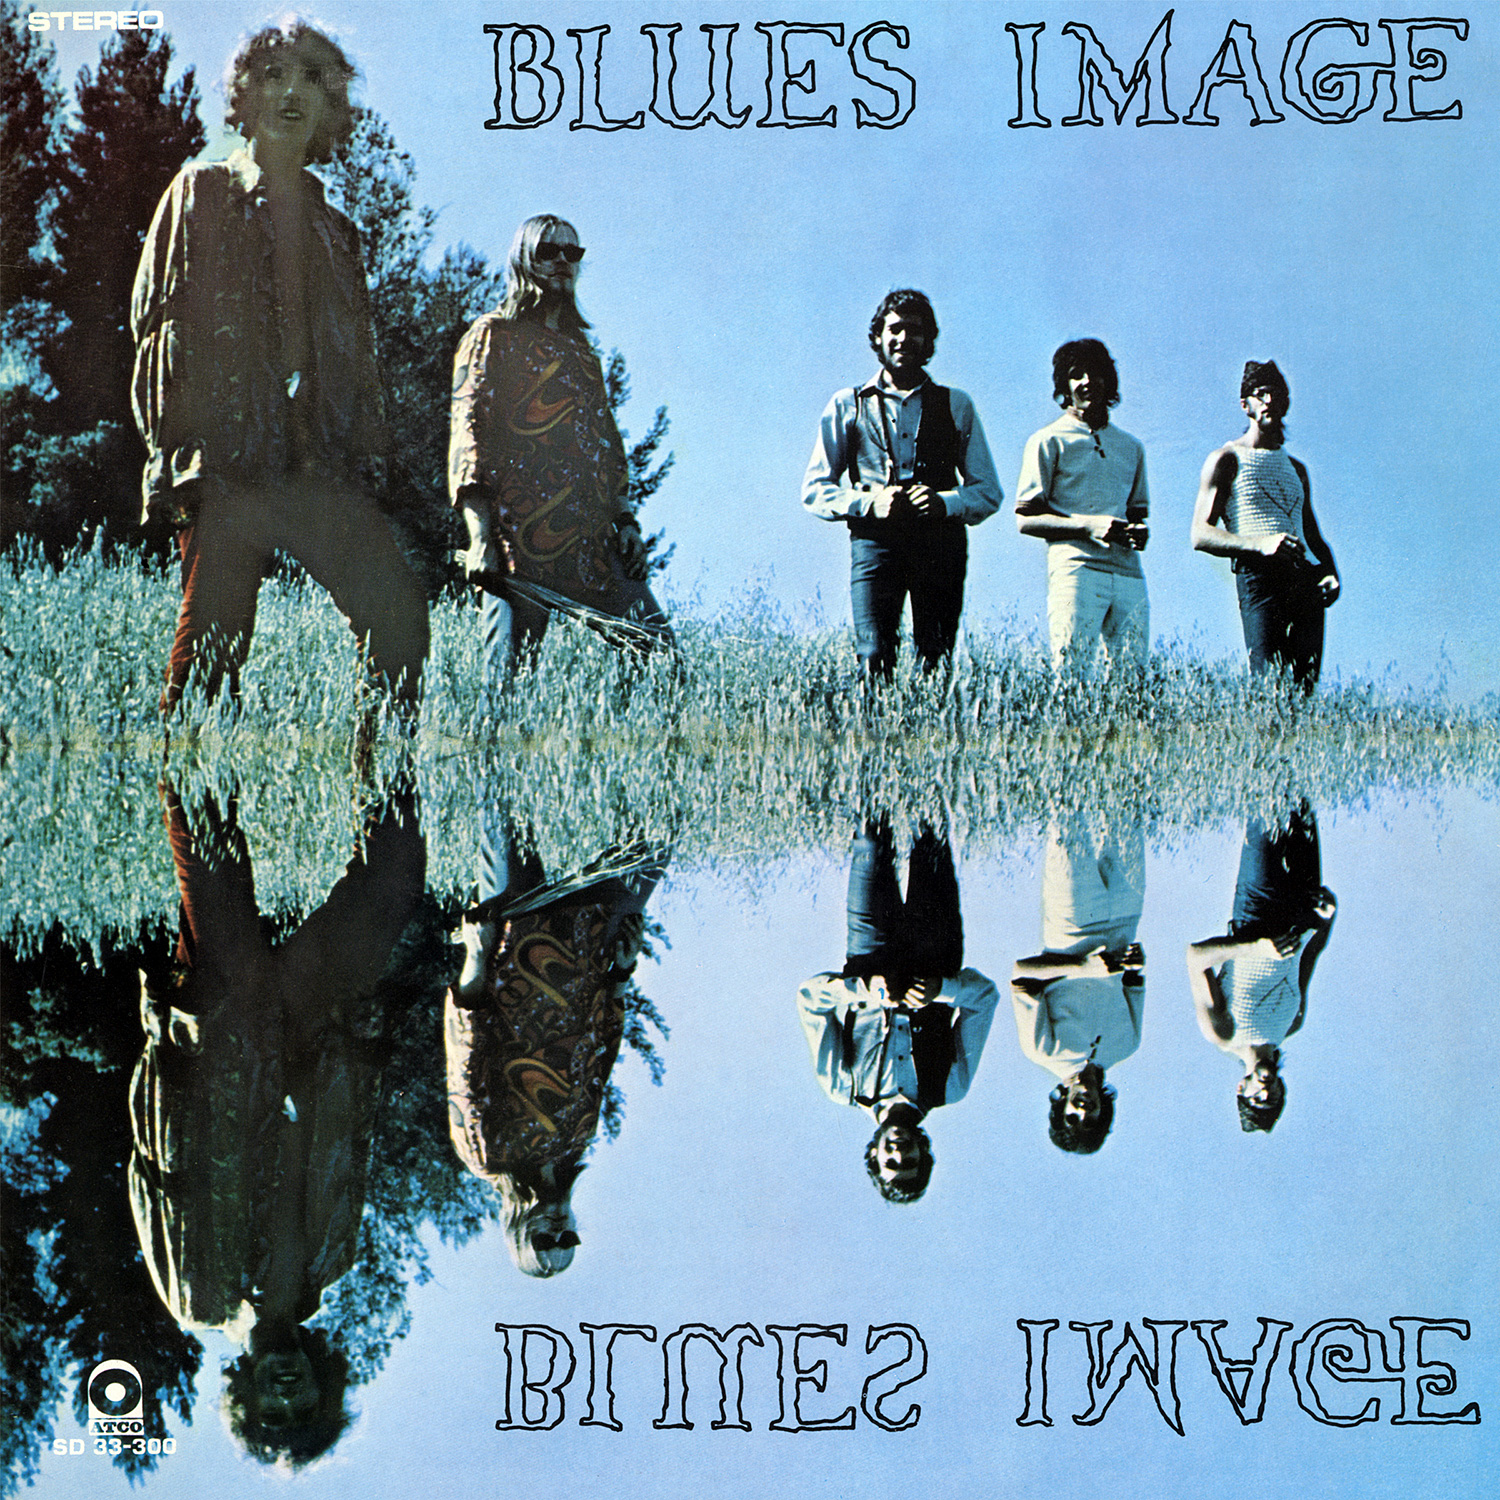 Blues Image - Blues Image (1969/2012) [AcousticSounds FLAC 24bit/96kHz]